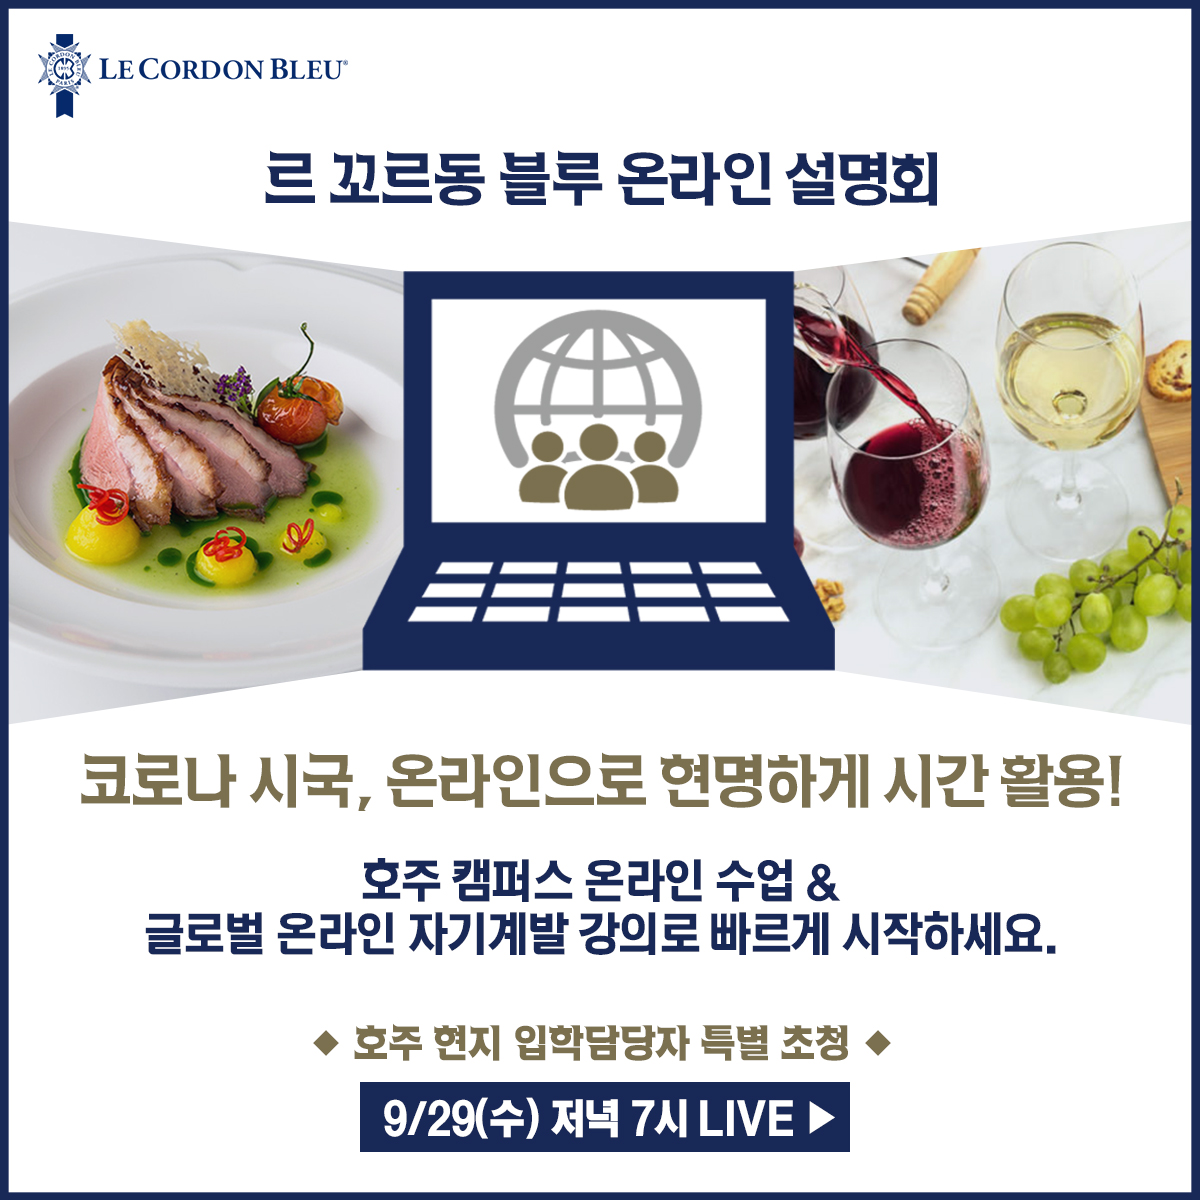 9/29(수) 온라인 요리유학 학업플랜 설명회